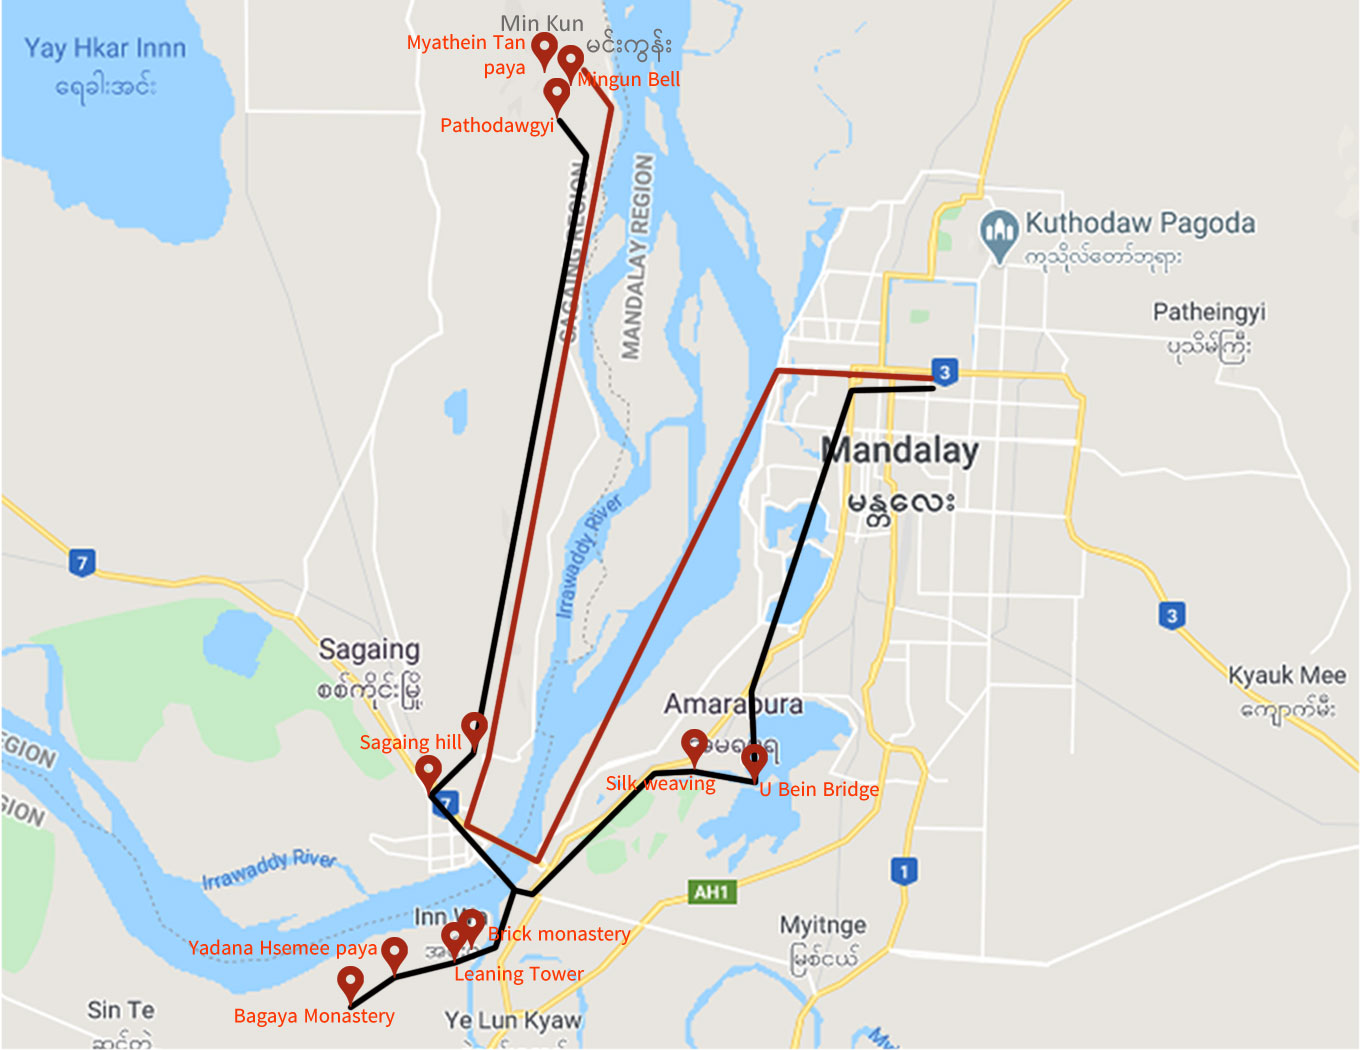 Ava-Sagaing-Amarapura-and-Mingun-tour